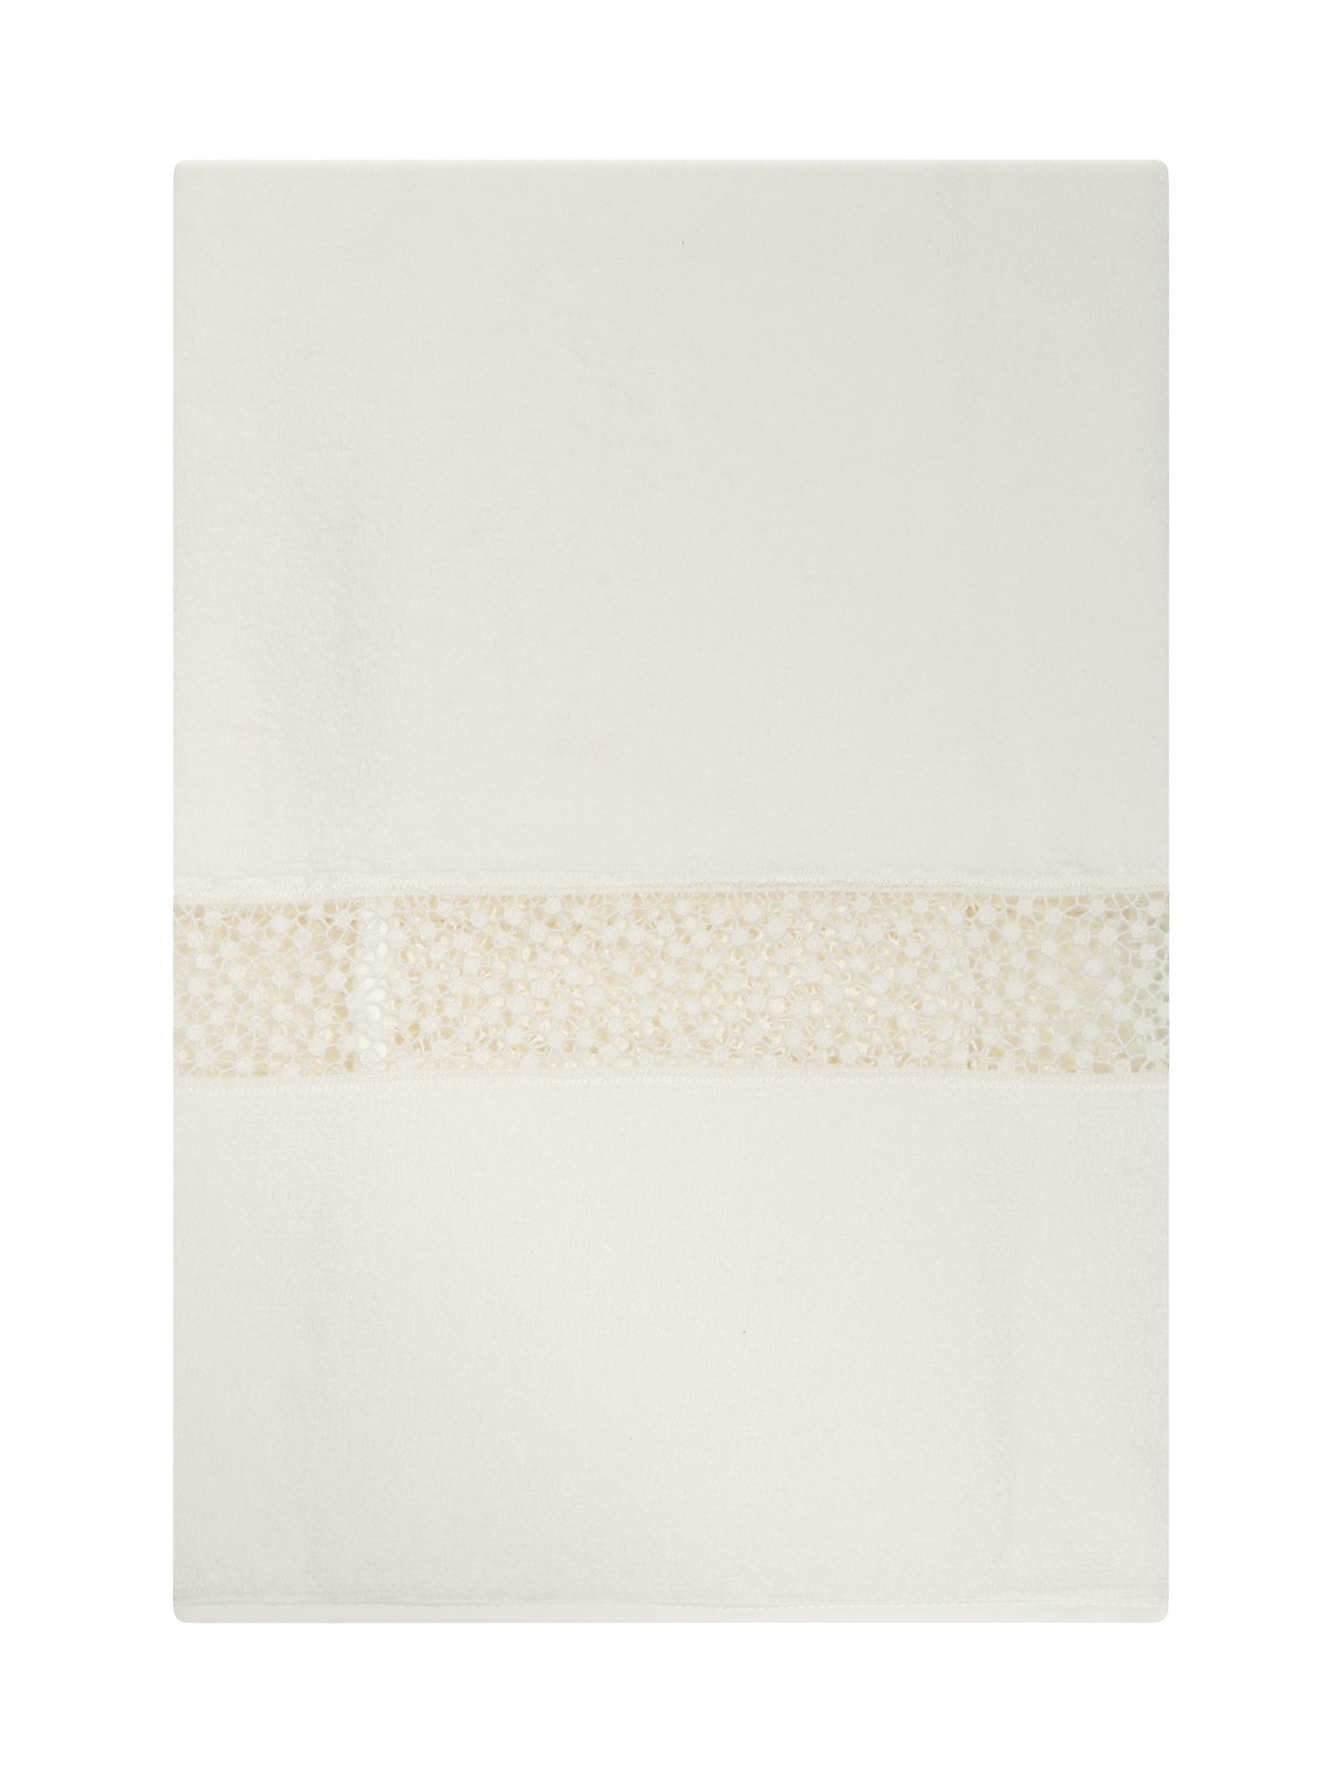 Полотенце из хлопковой махровой ткани с кружевной вставкой  - Обтравка1